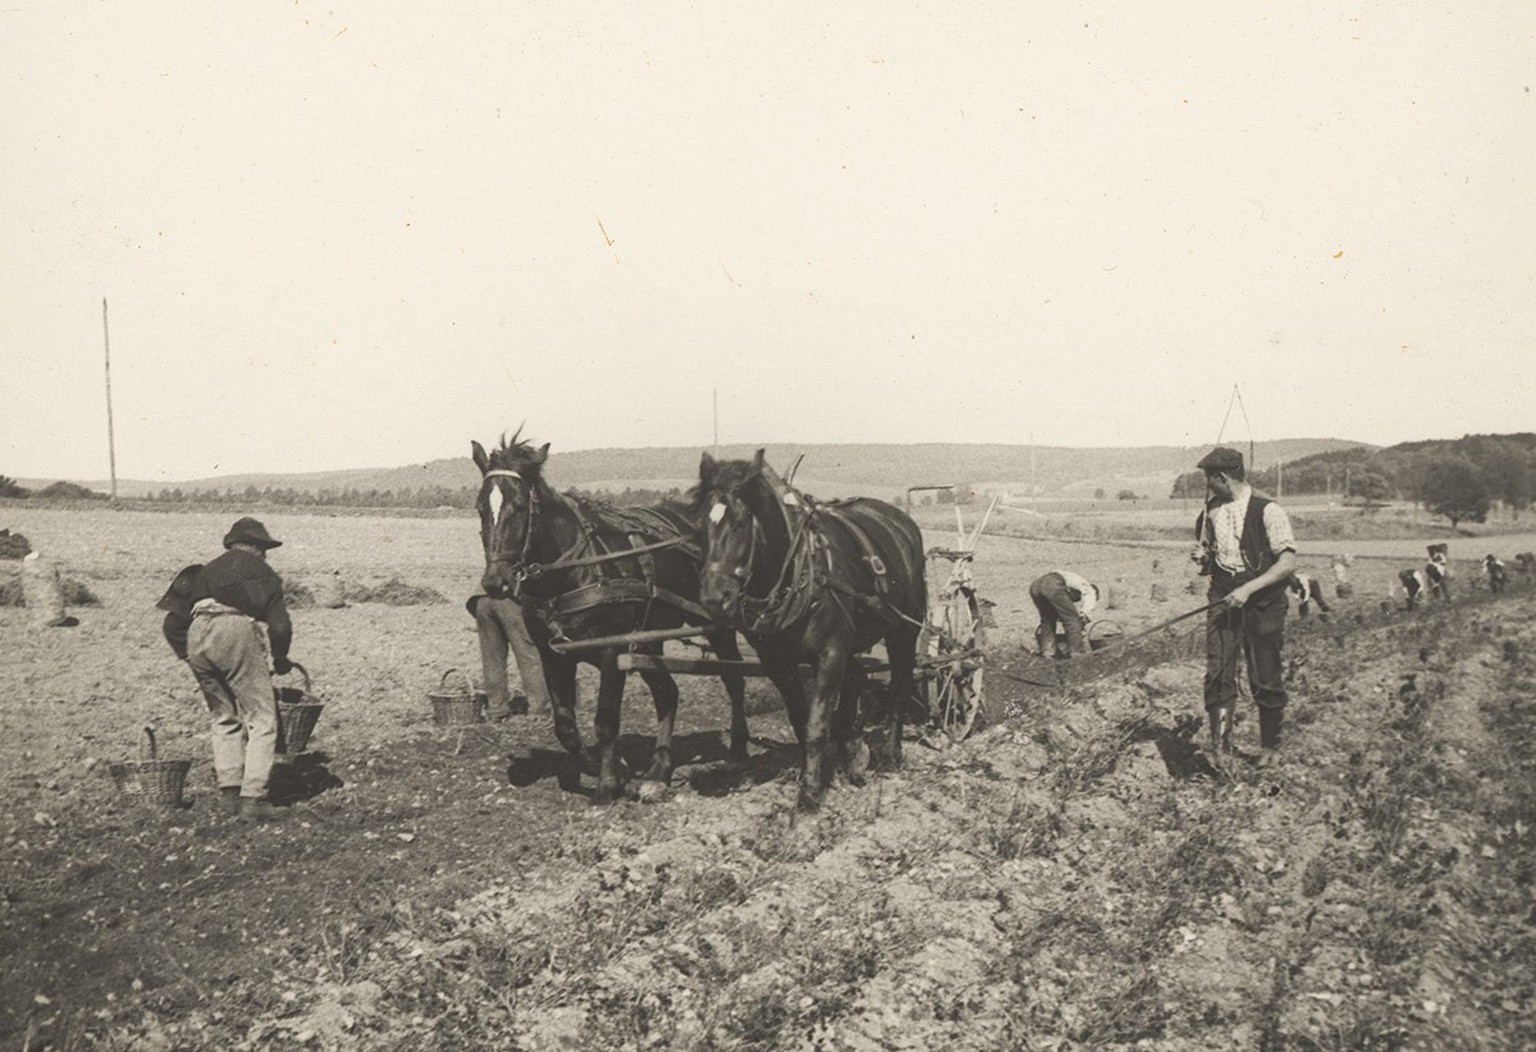 Récolte de pommes de terre à Rheinau, vers 1910.
https://permalink.nationalmuseum.ch/100172044